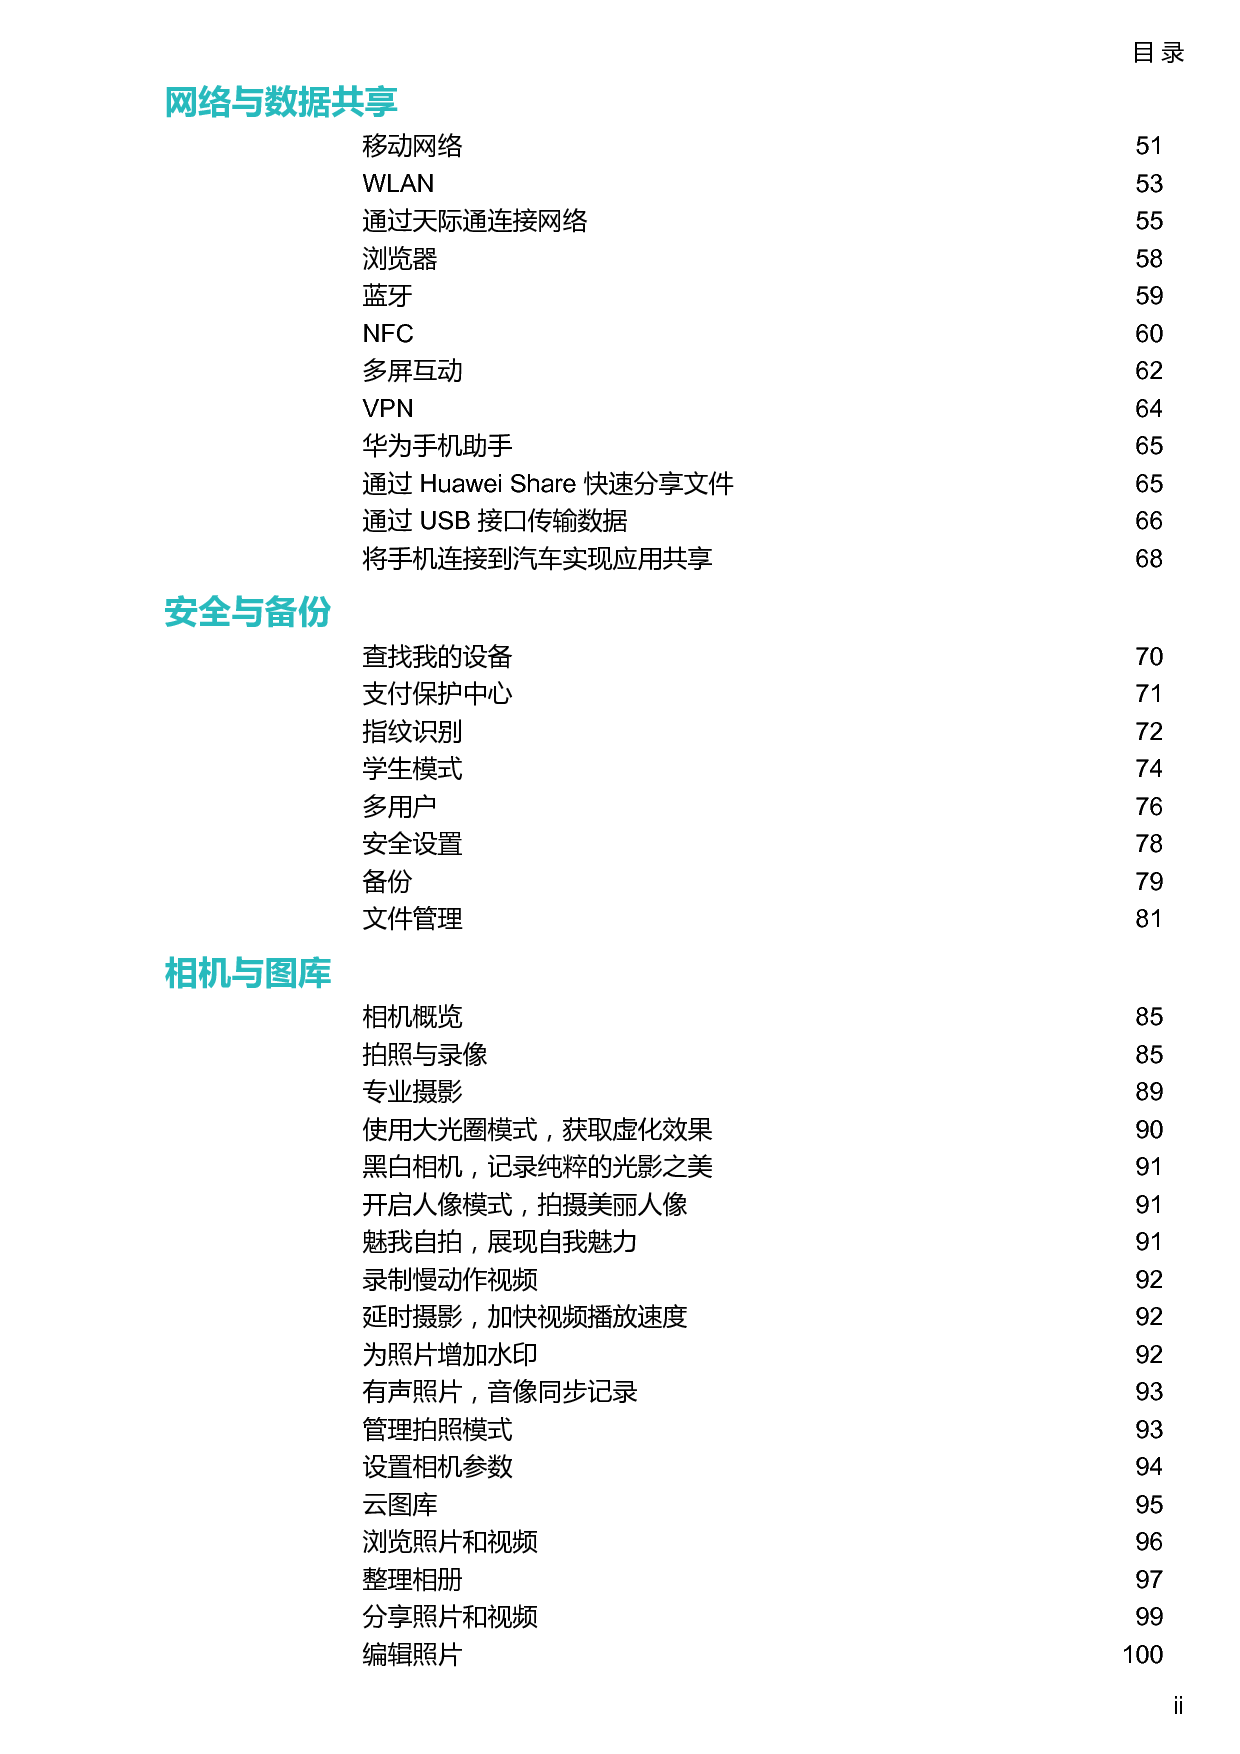 华为 Huawei P10 VTR-AL00,VTR-TL00 用户指南 第2页